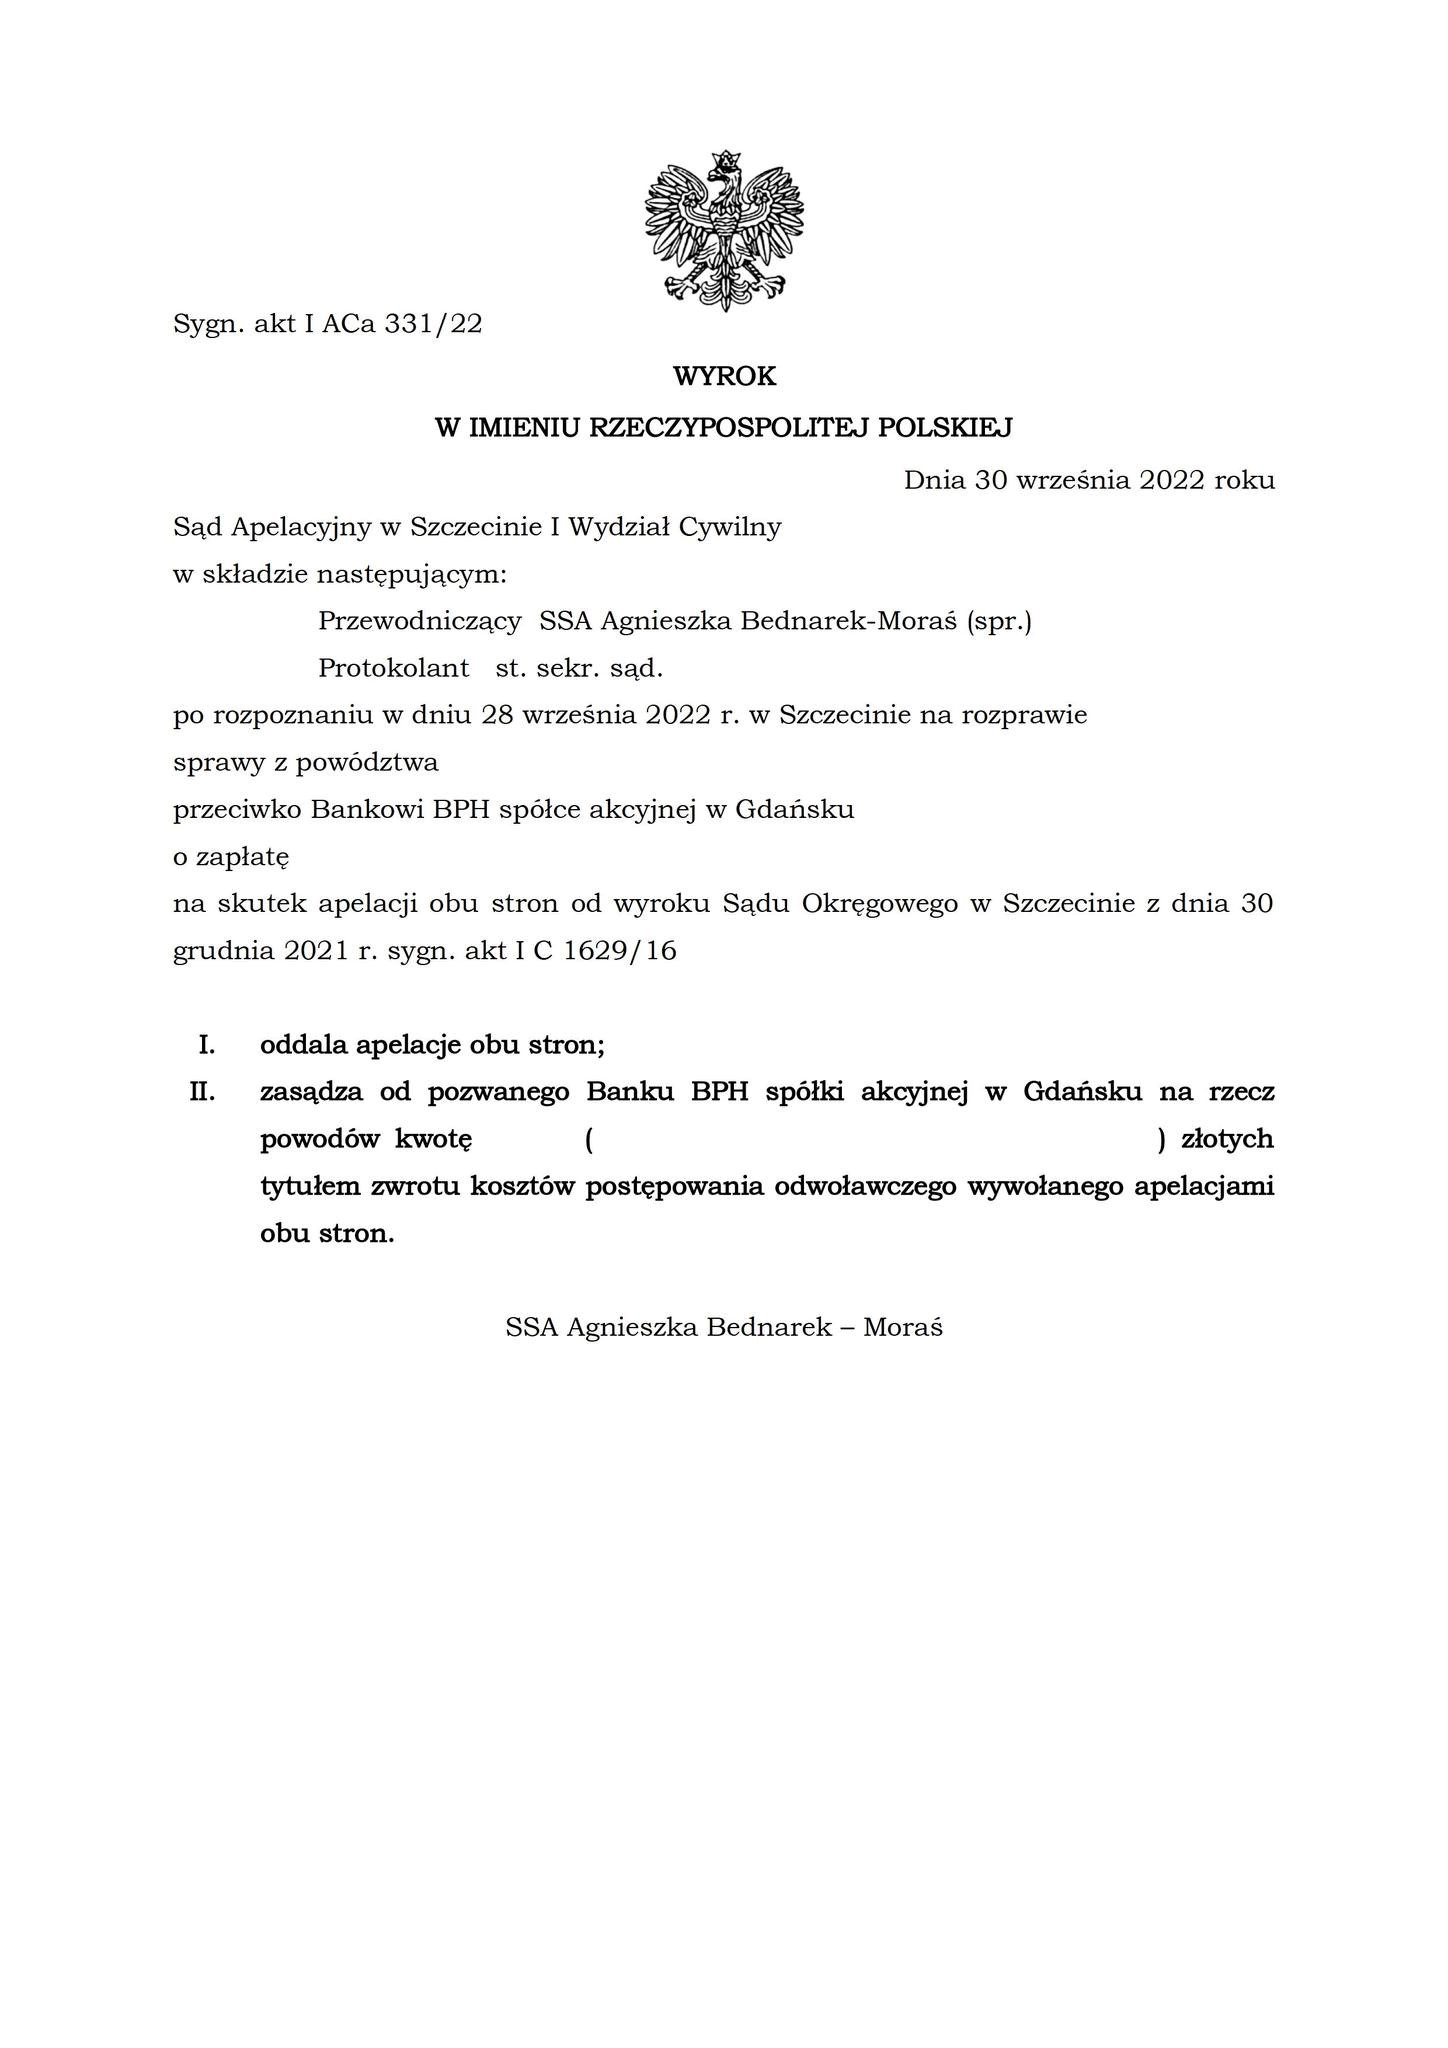 Wyrok Sądu Apelacyjnego w Szczecinie z dnia 30 września 2022 r., sygn. akt I ACa 331/22